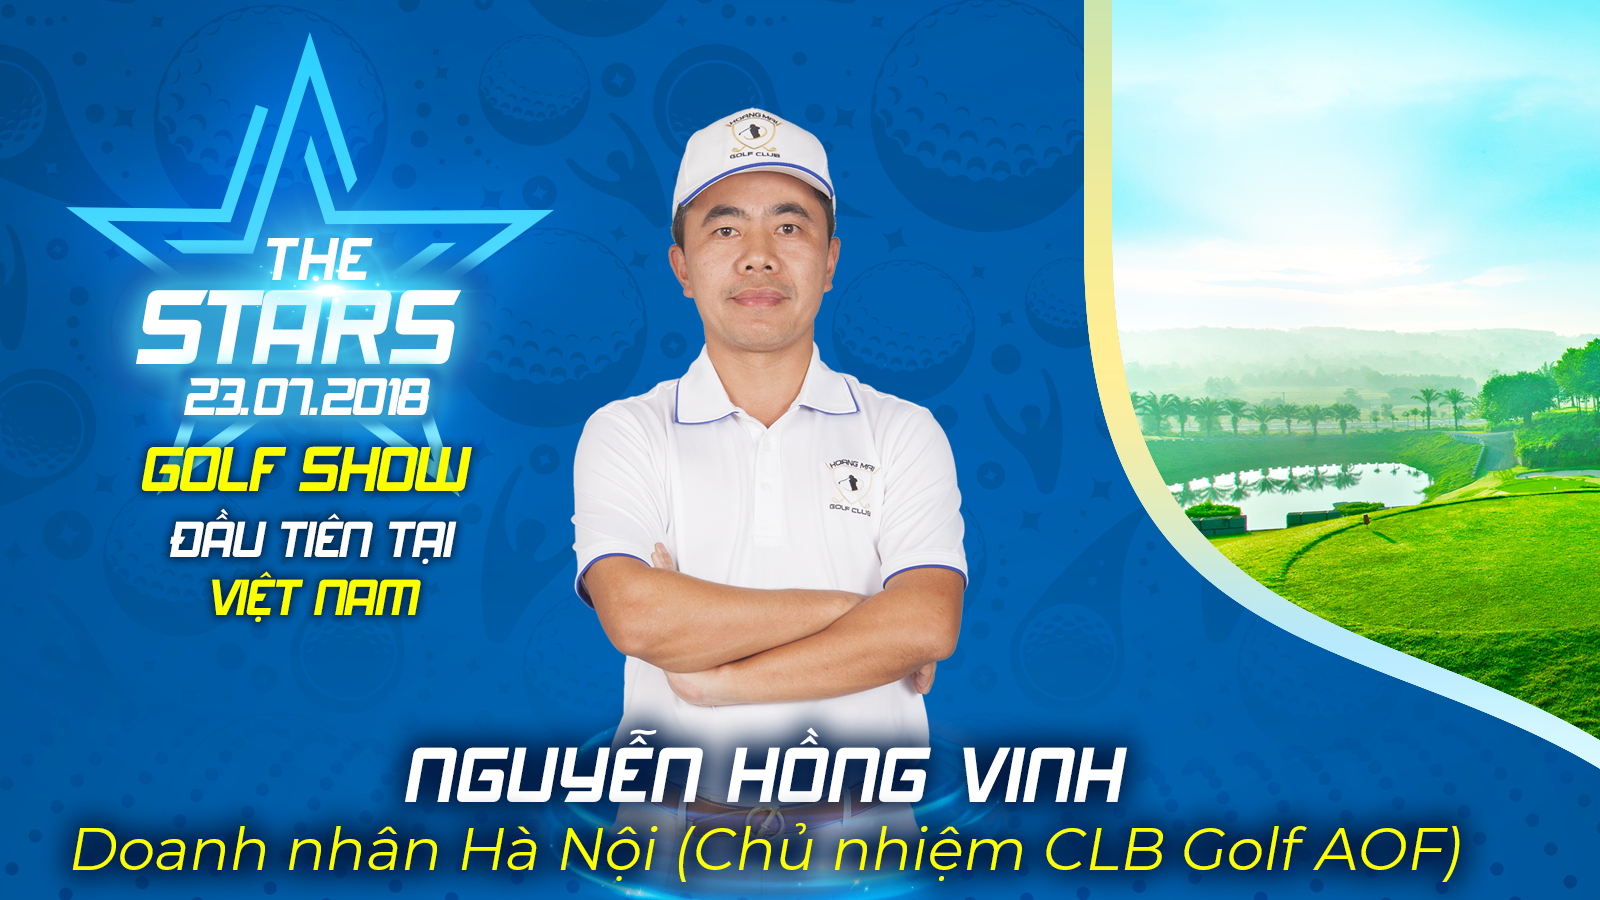 Golfer Nguyễn Hồng Vinh: 'Chơi golf là đang chinh phục chính mình'